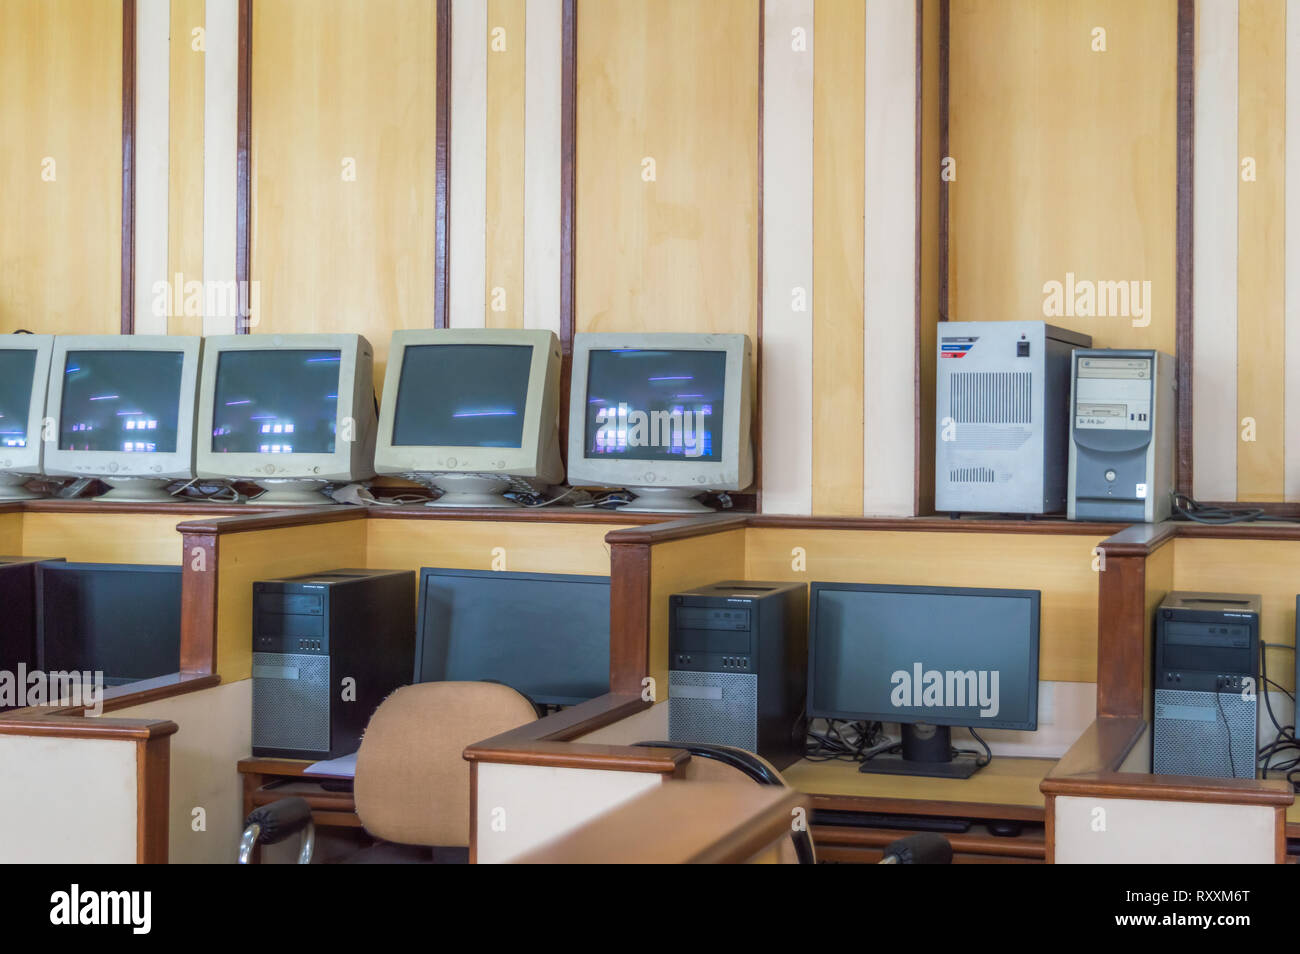 Pièces de moniteurs et moniteurs fonctionnels dans le laboratoire informatique d'une école avec cabines individuelles et des chaises Banque D'Images